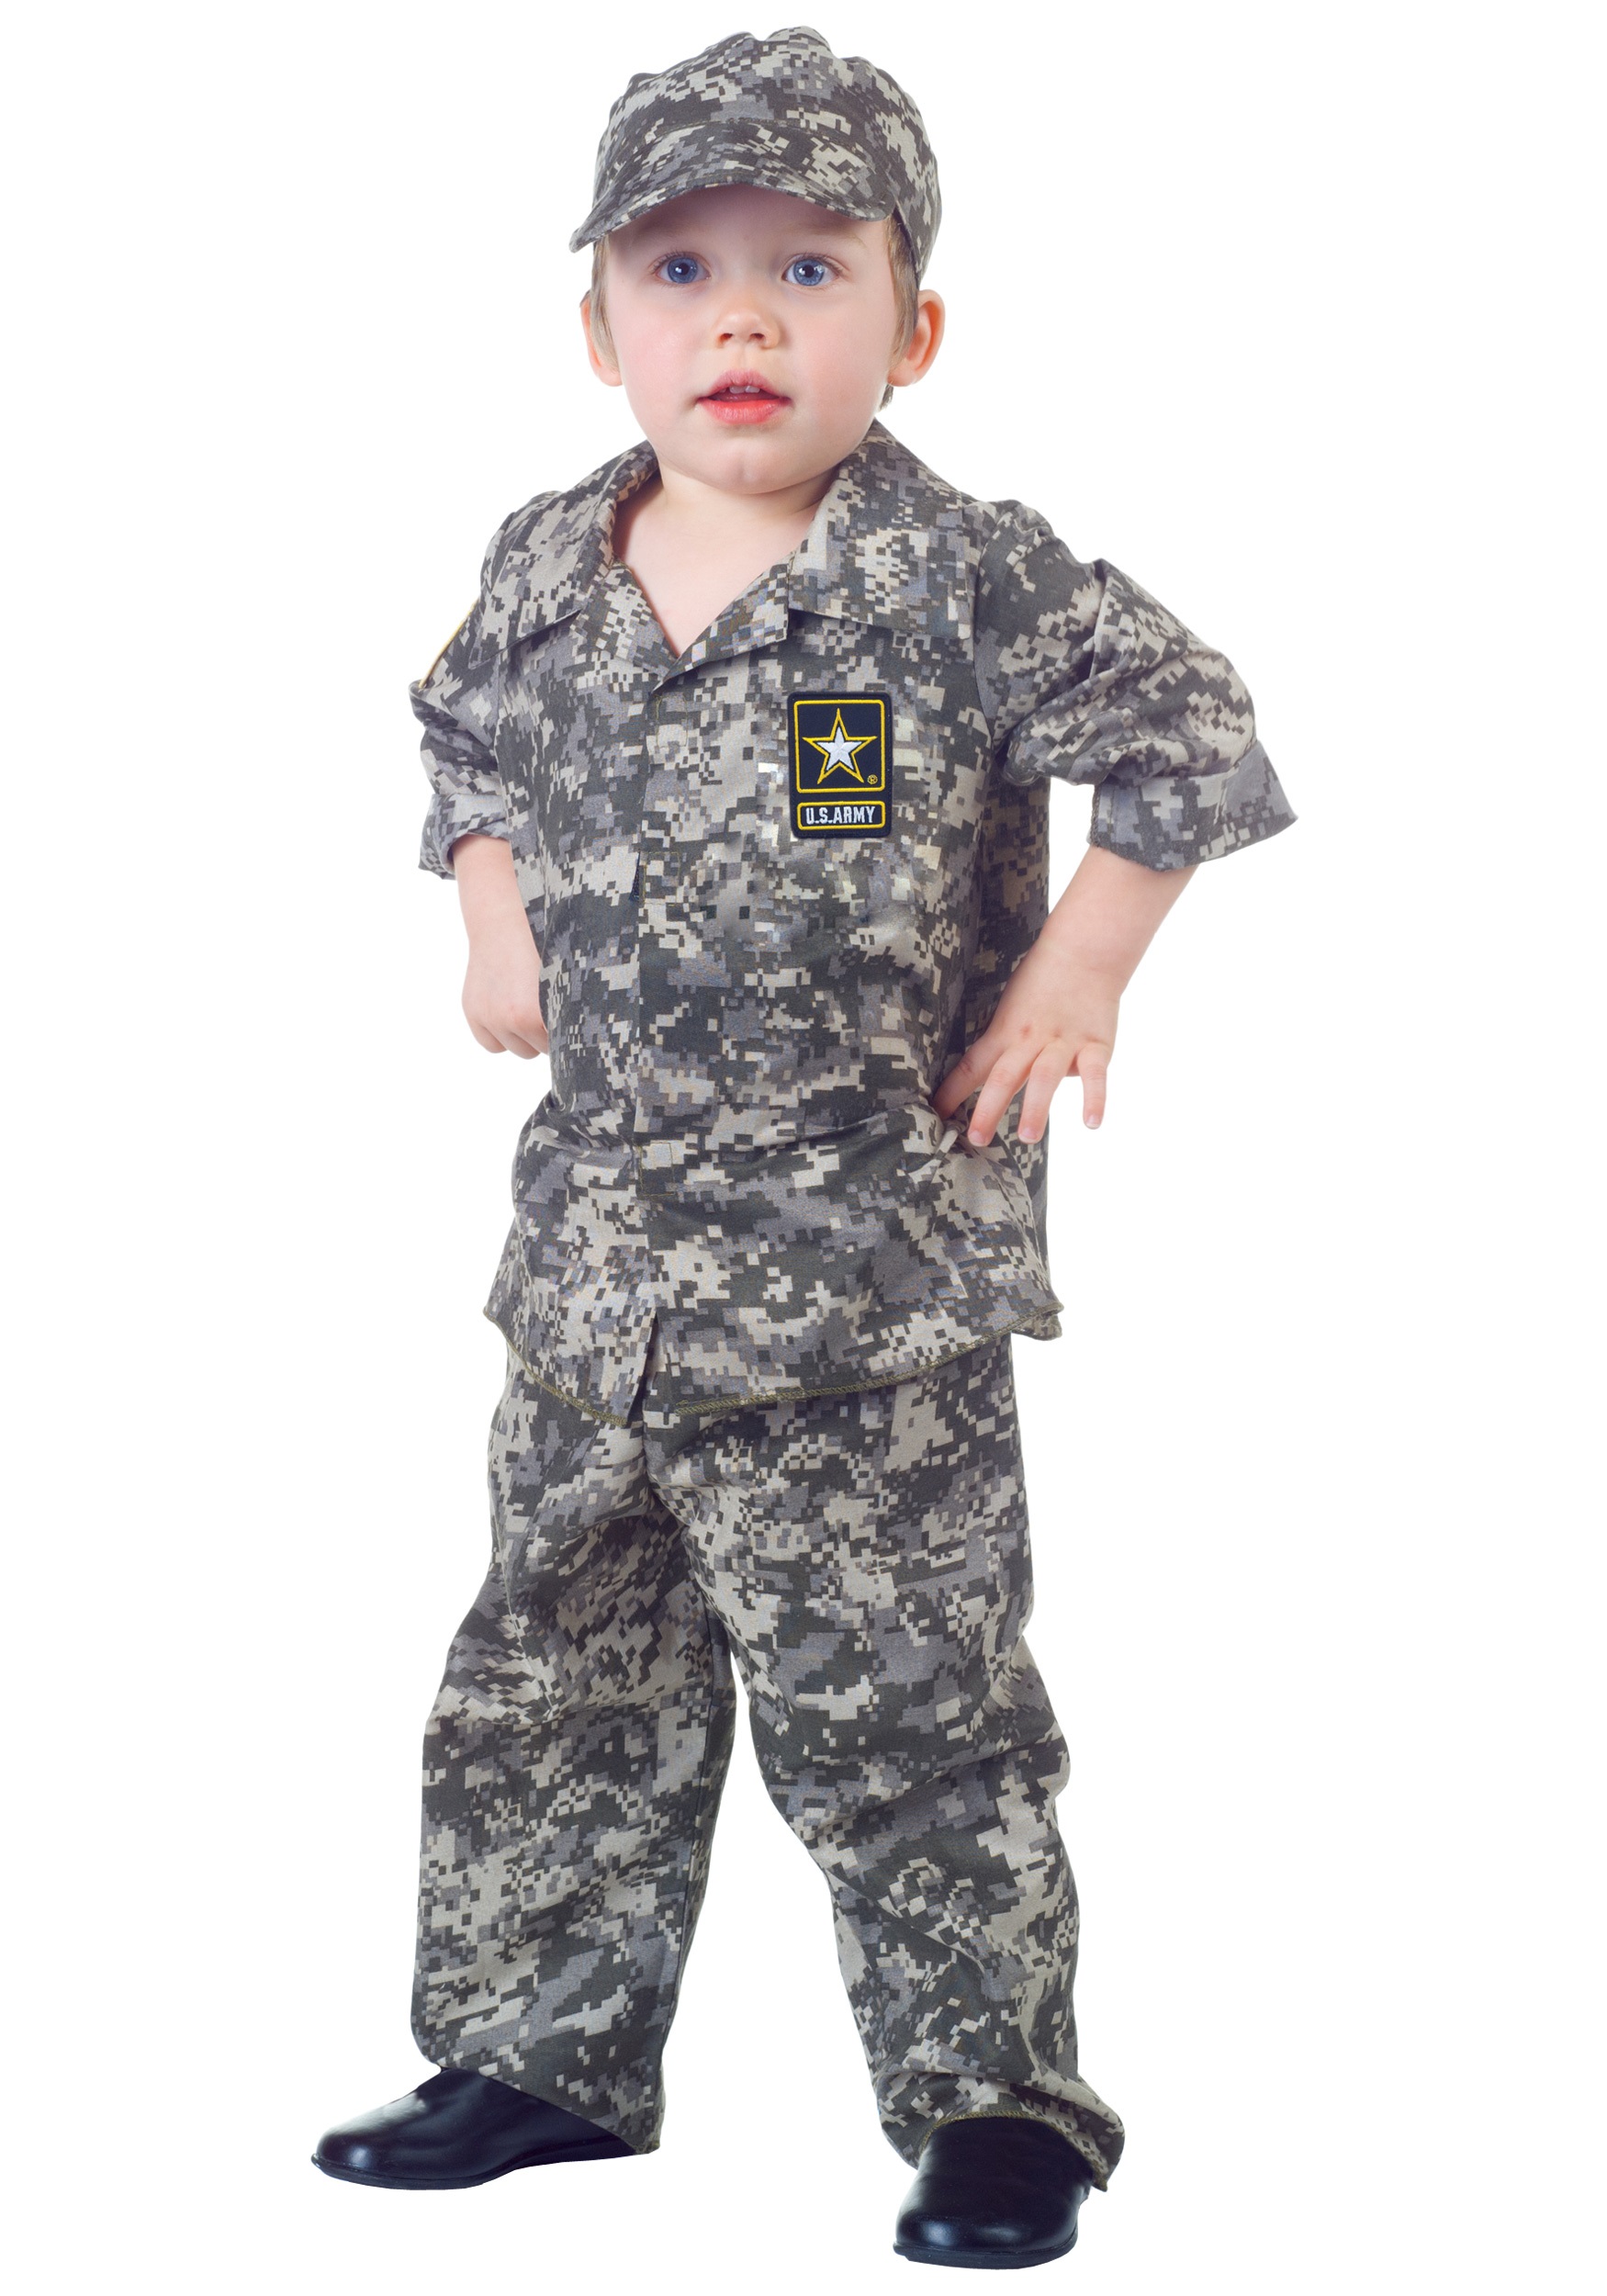 Comprar Disfraz de Militar Camuflaje Hombre - Disfraces Militares Adultos